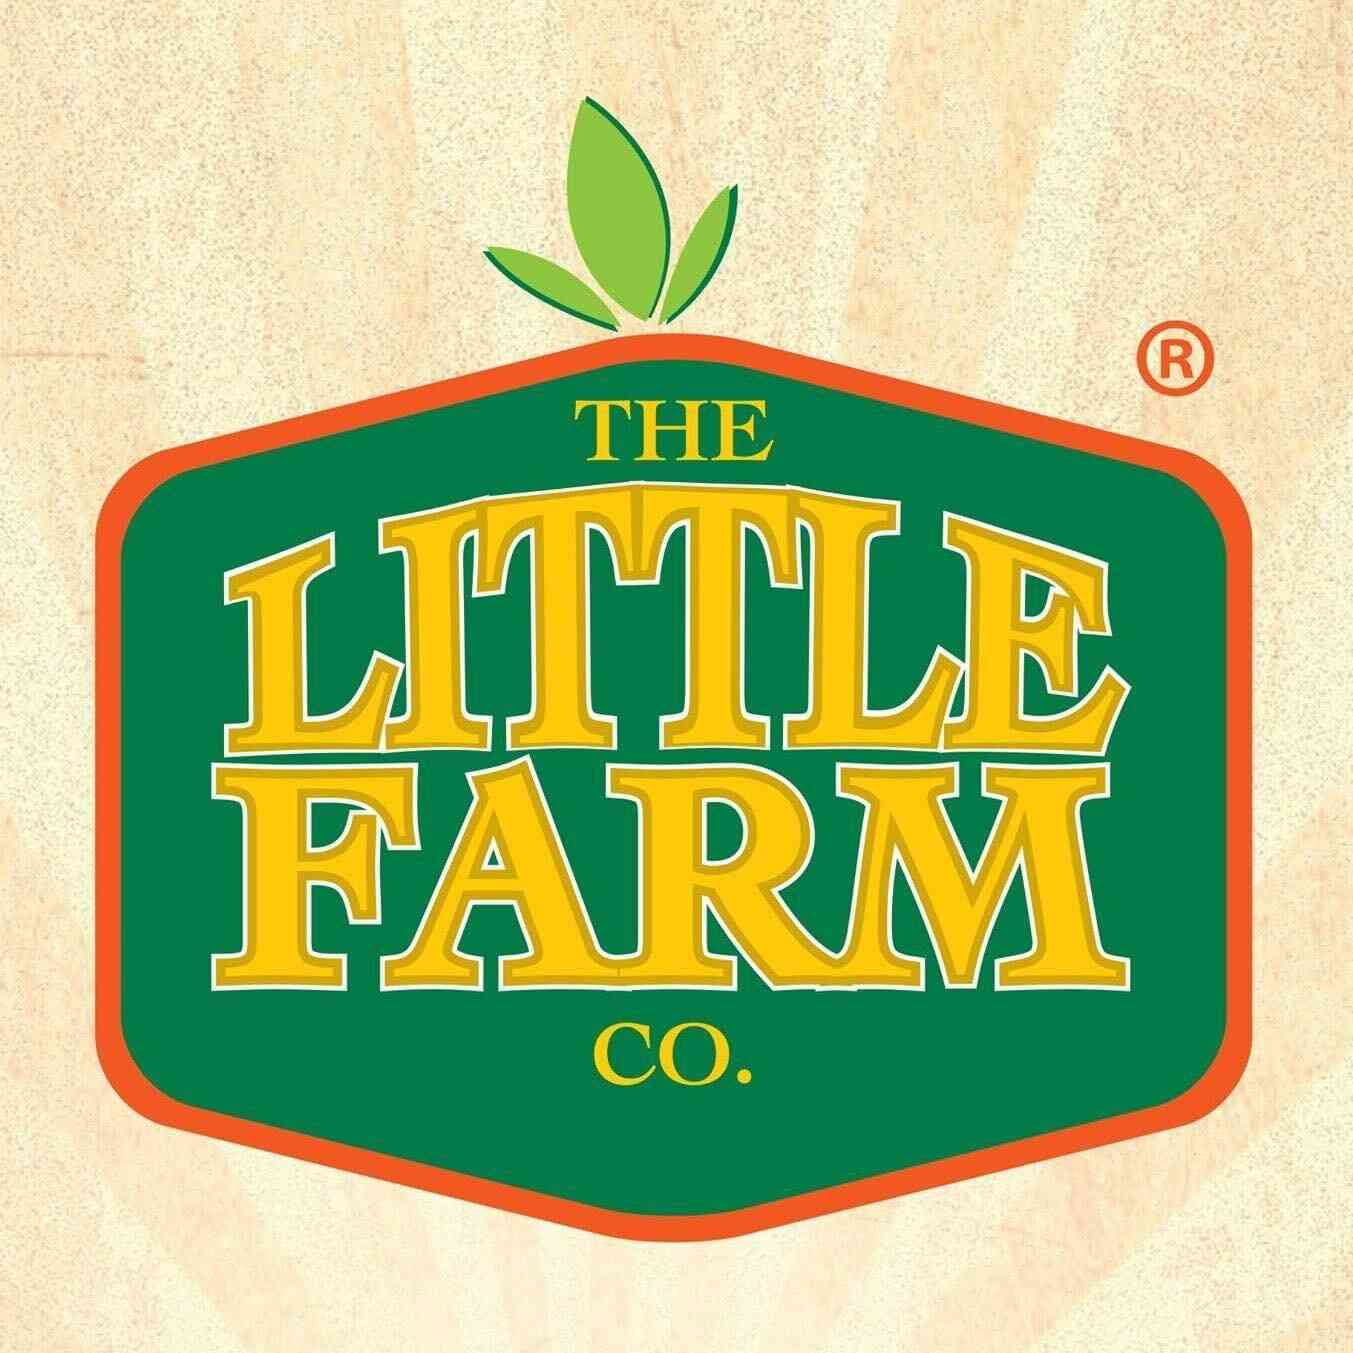 The Little farm